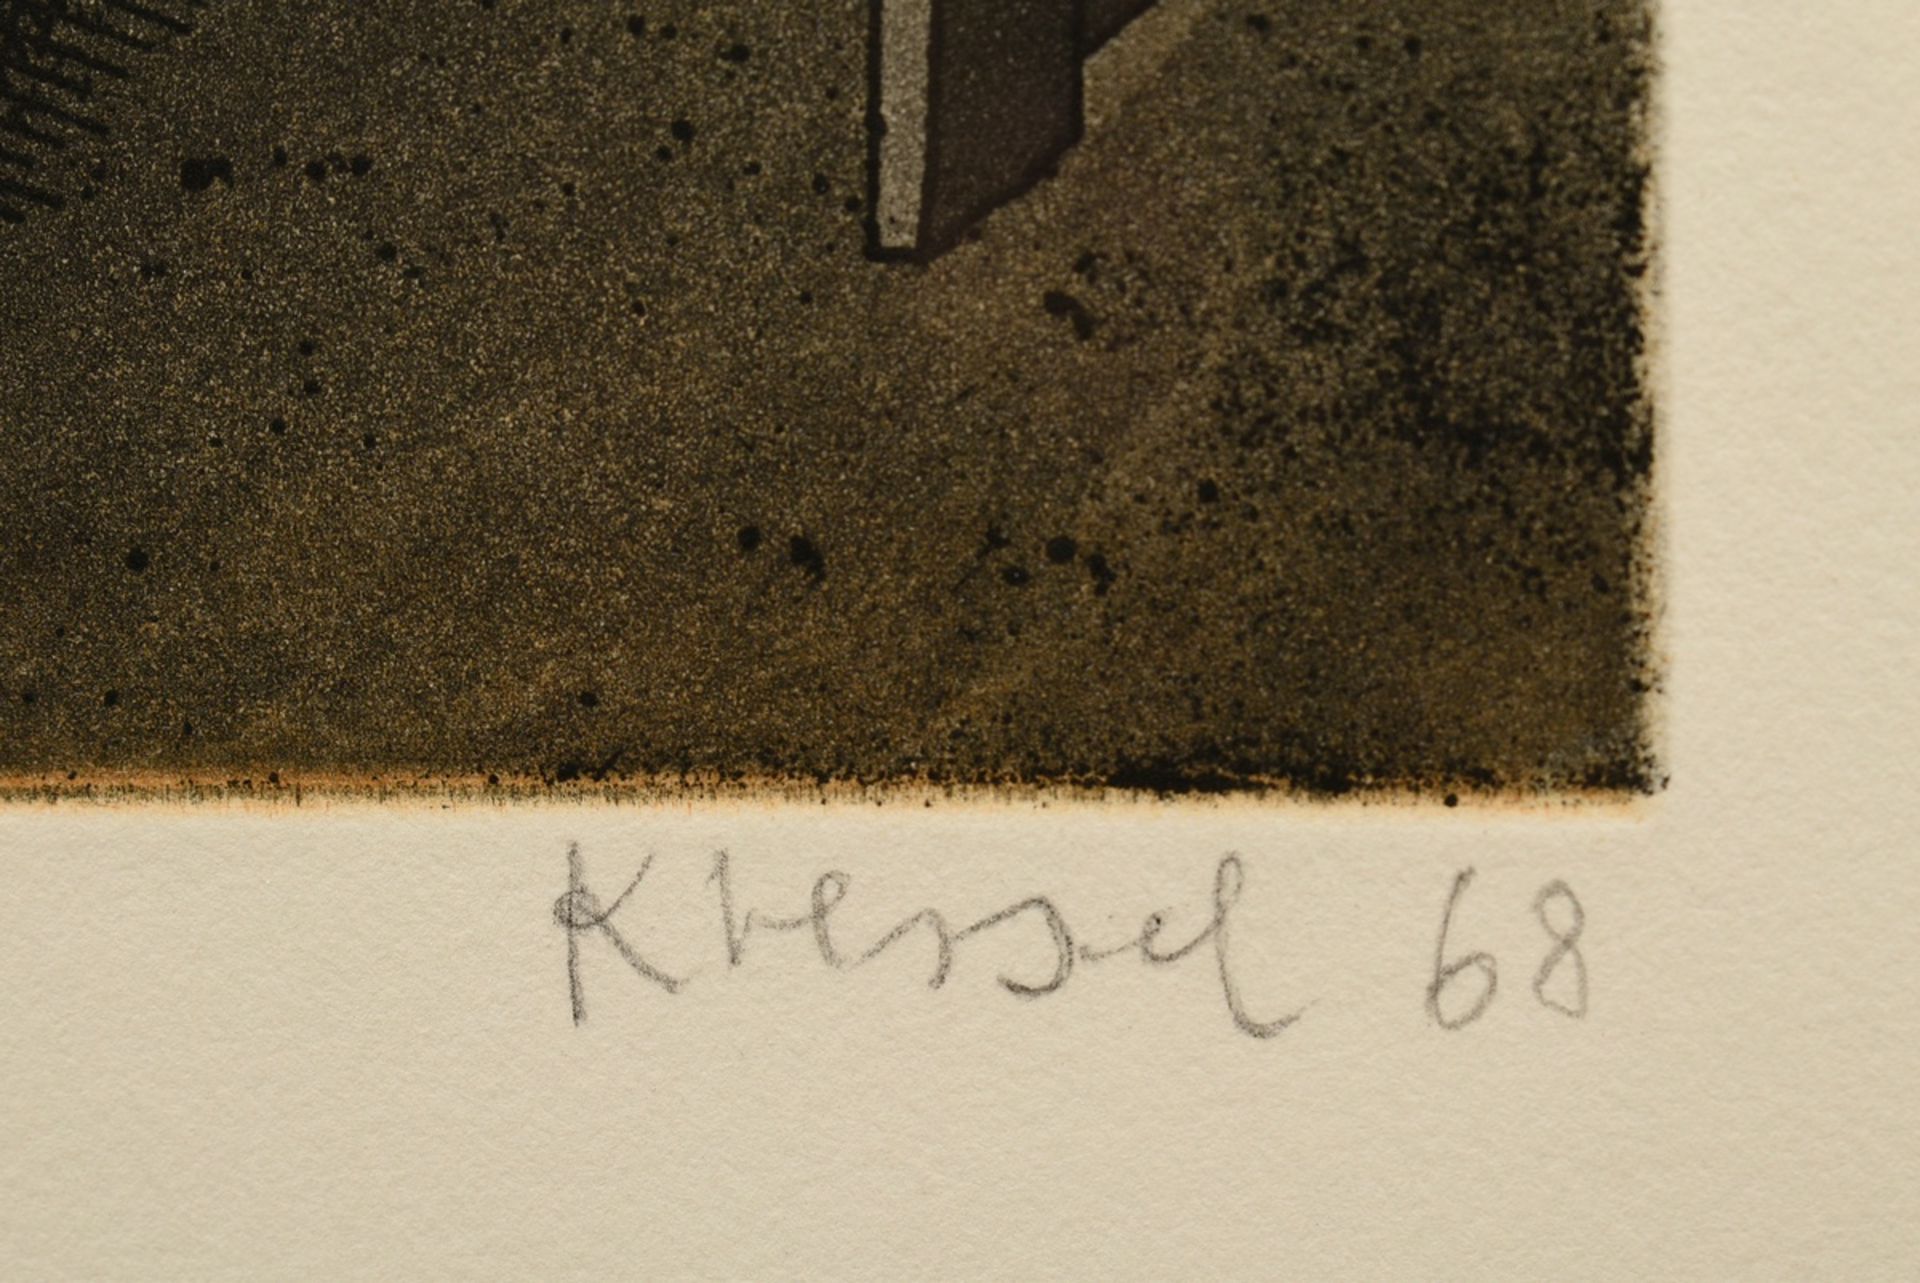 Kressel, Dieter (1925-2015) "Schmetterlinge" 1968, Radierung, 16/60, u. sign./dat./num., WVZ 60, PM - Bild 3 aus 3